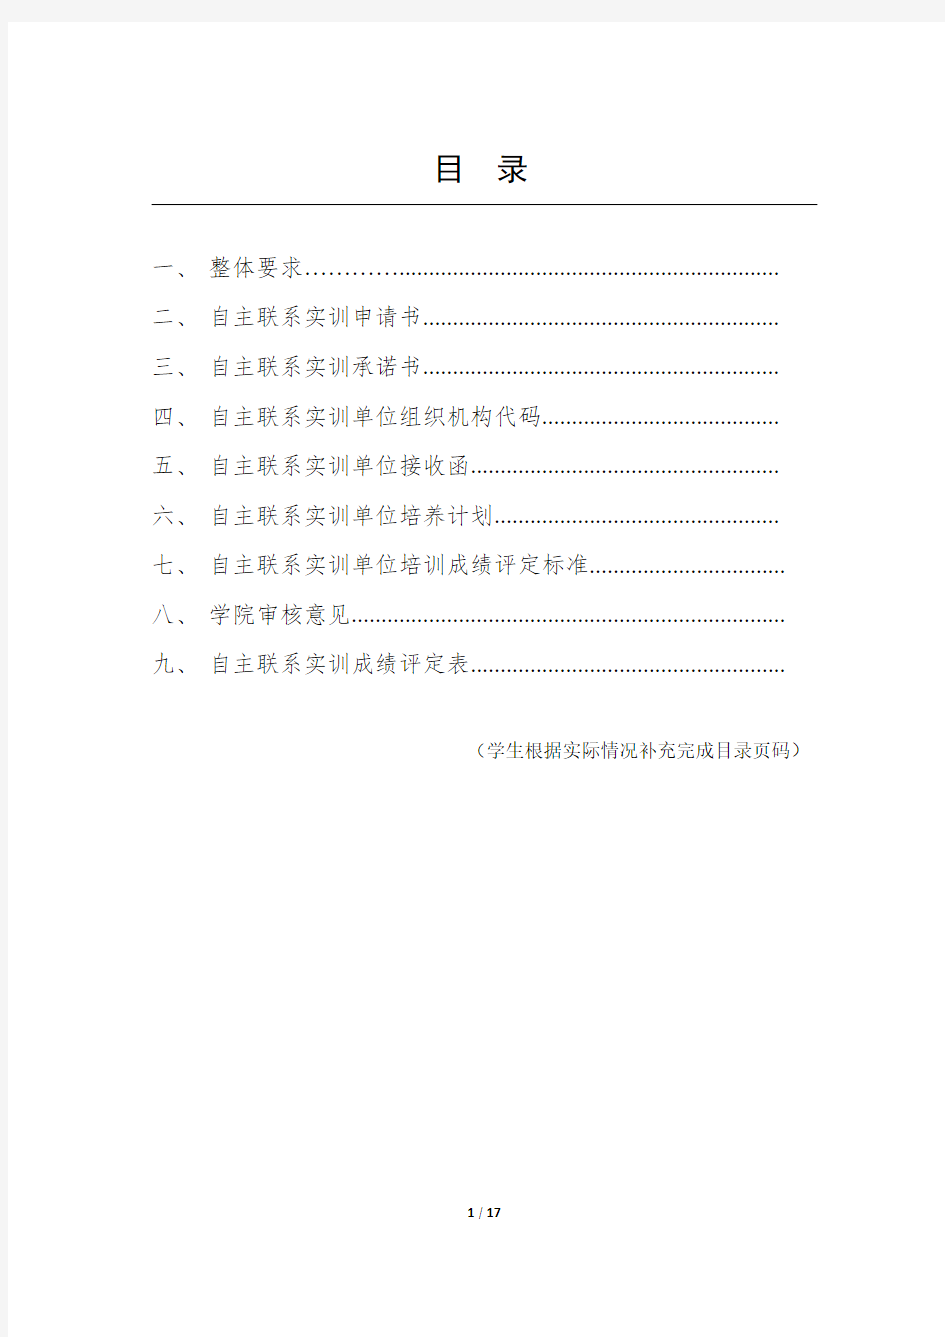 重庆邮电大学软件工程专业综合实训手册(自主联系)